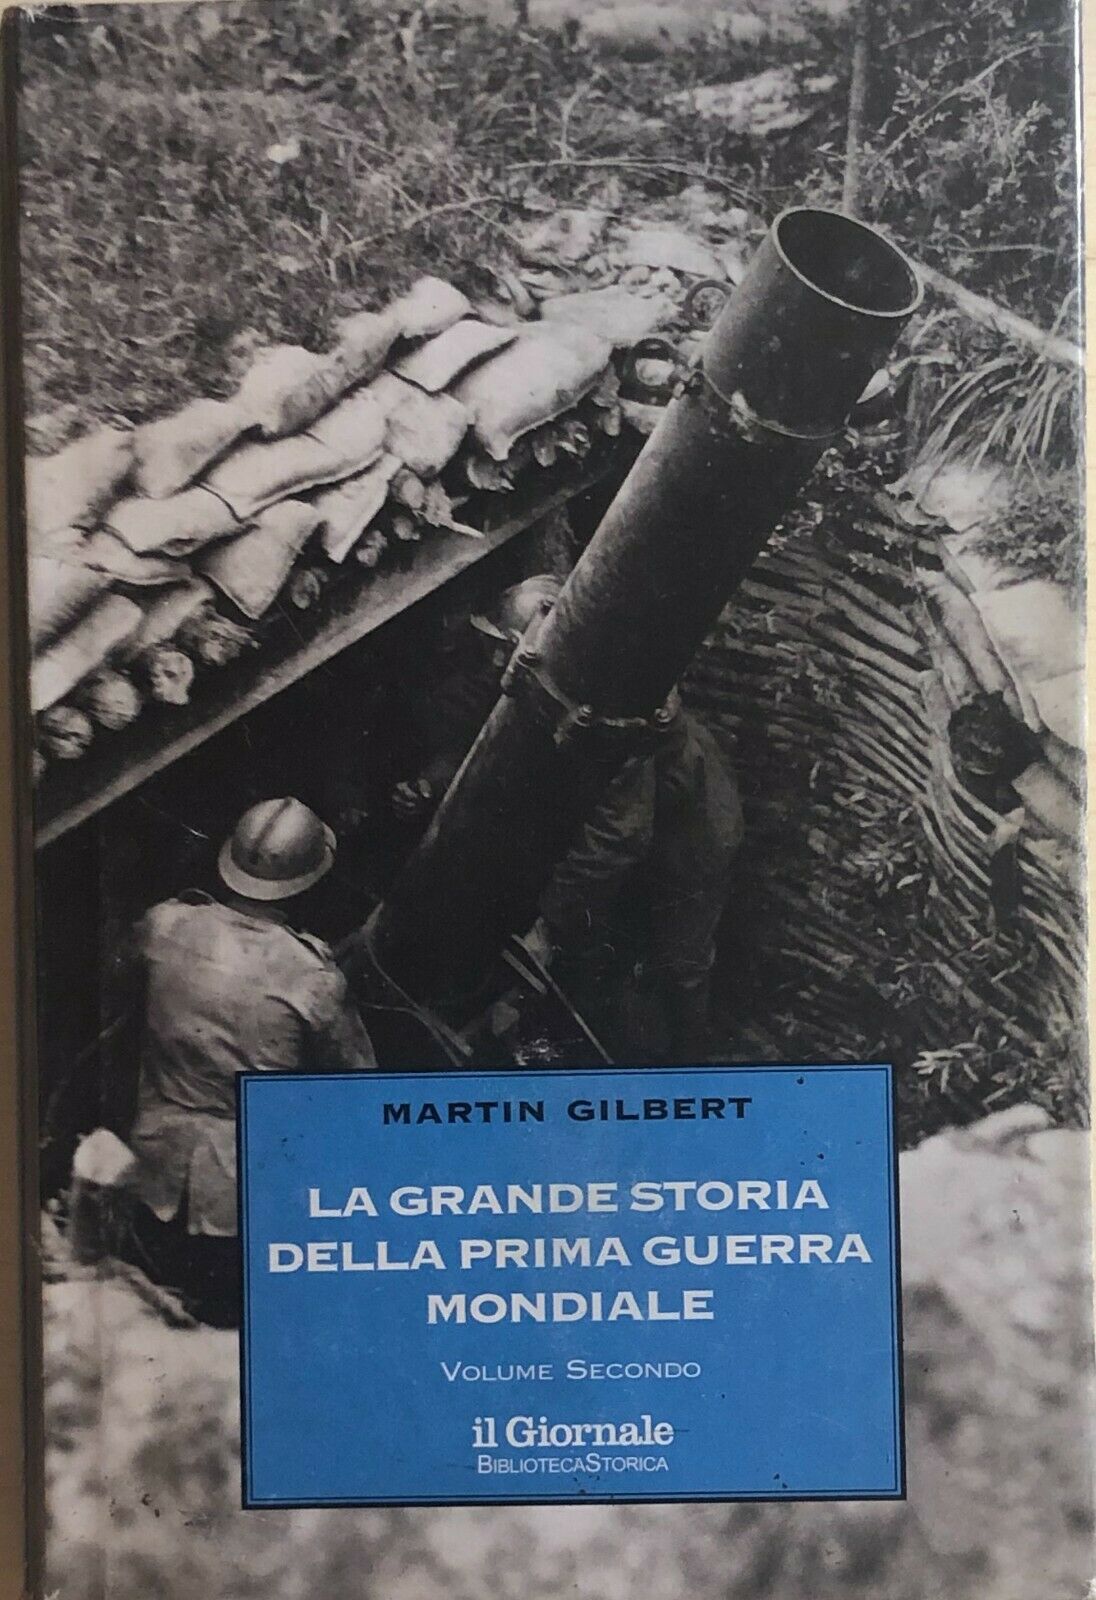 La grande storia della prima guerra mondiale 2 di Martin Gilbert, 1998, Il Giorn